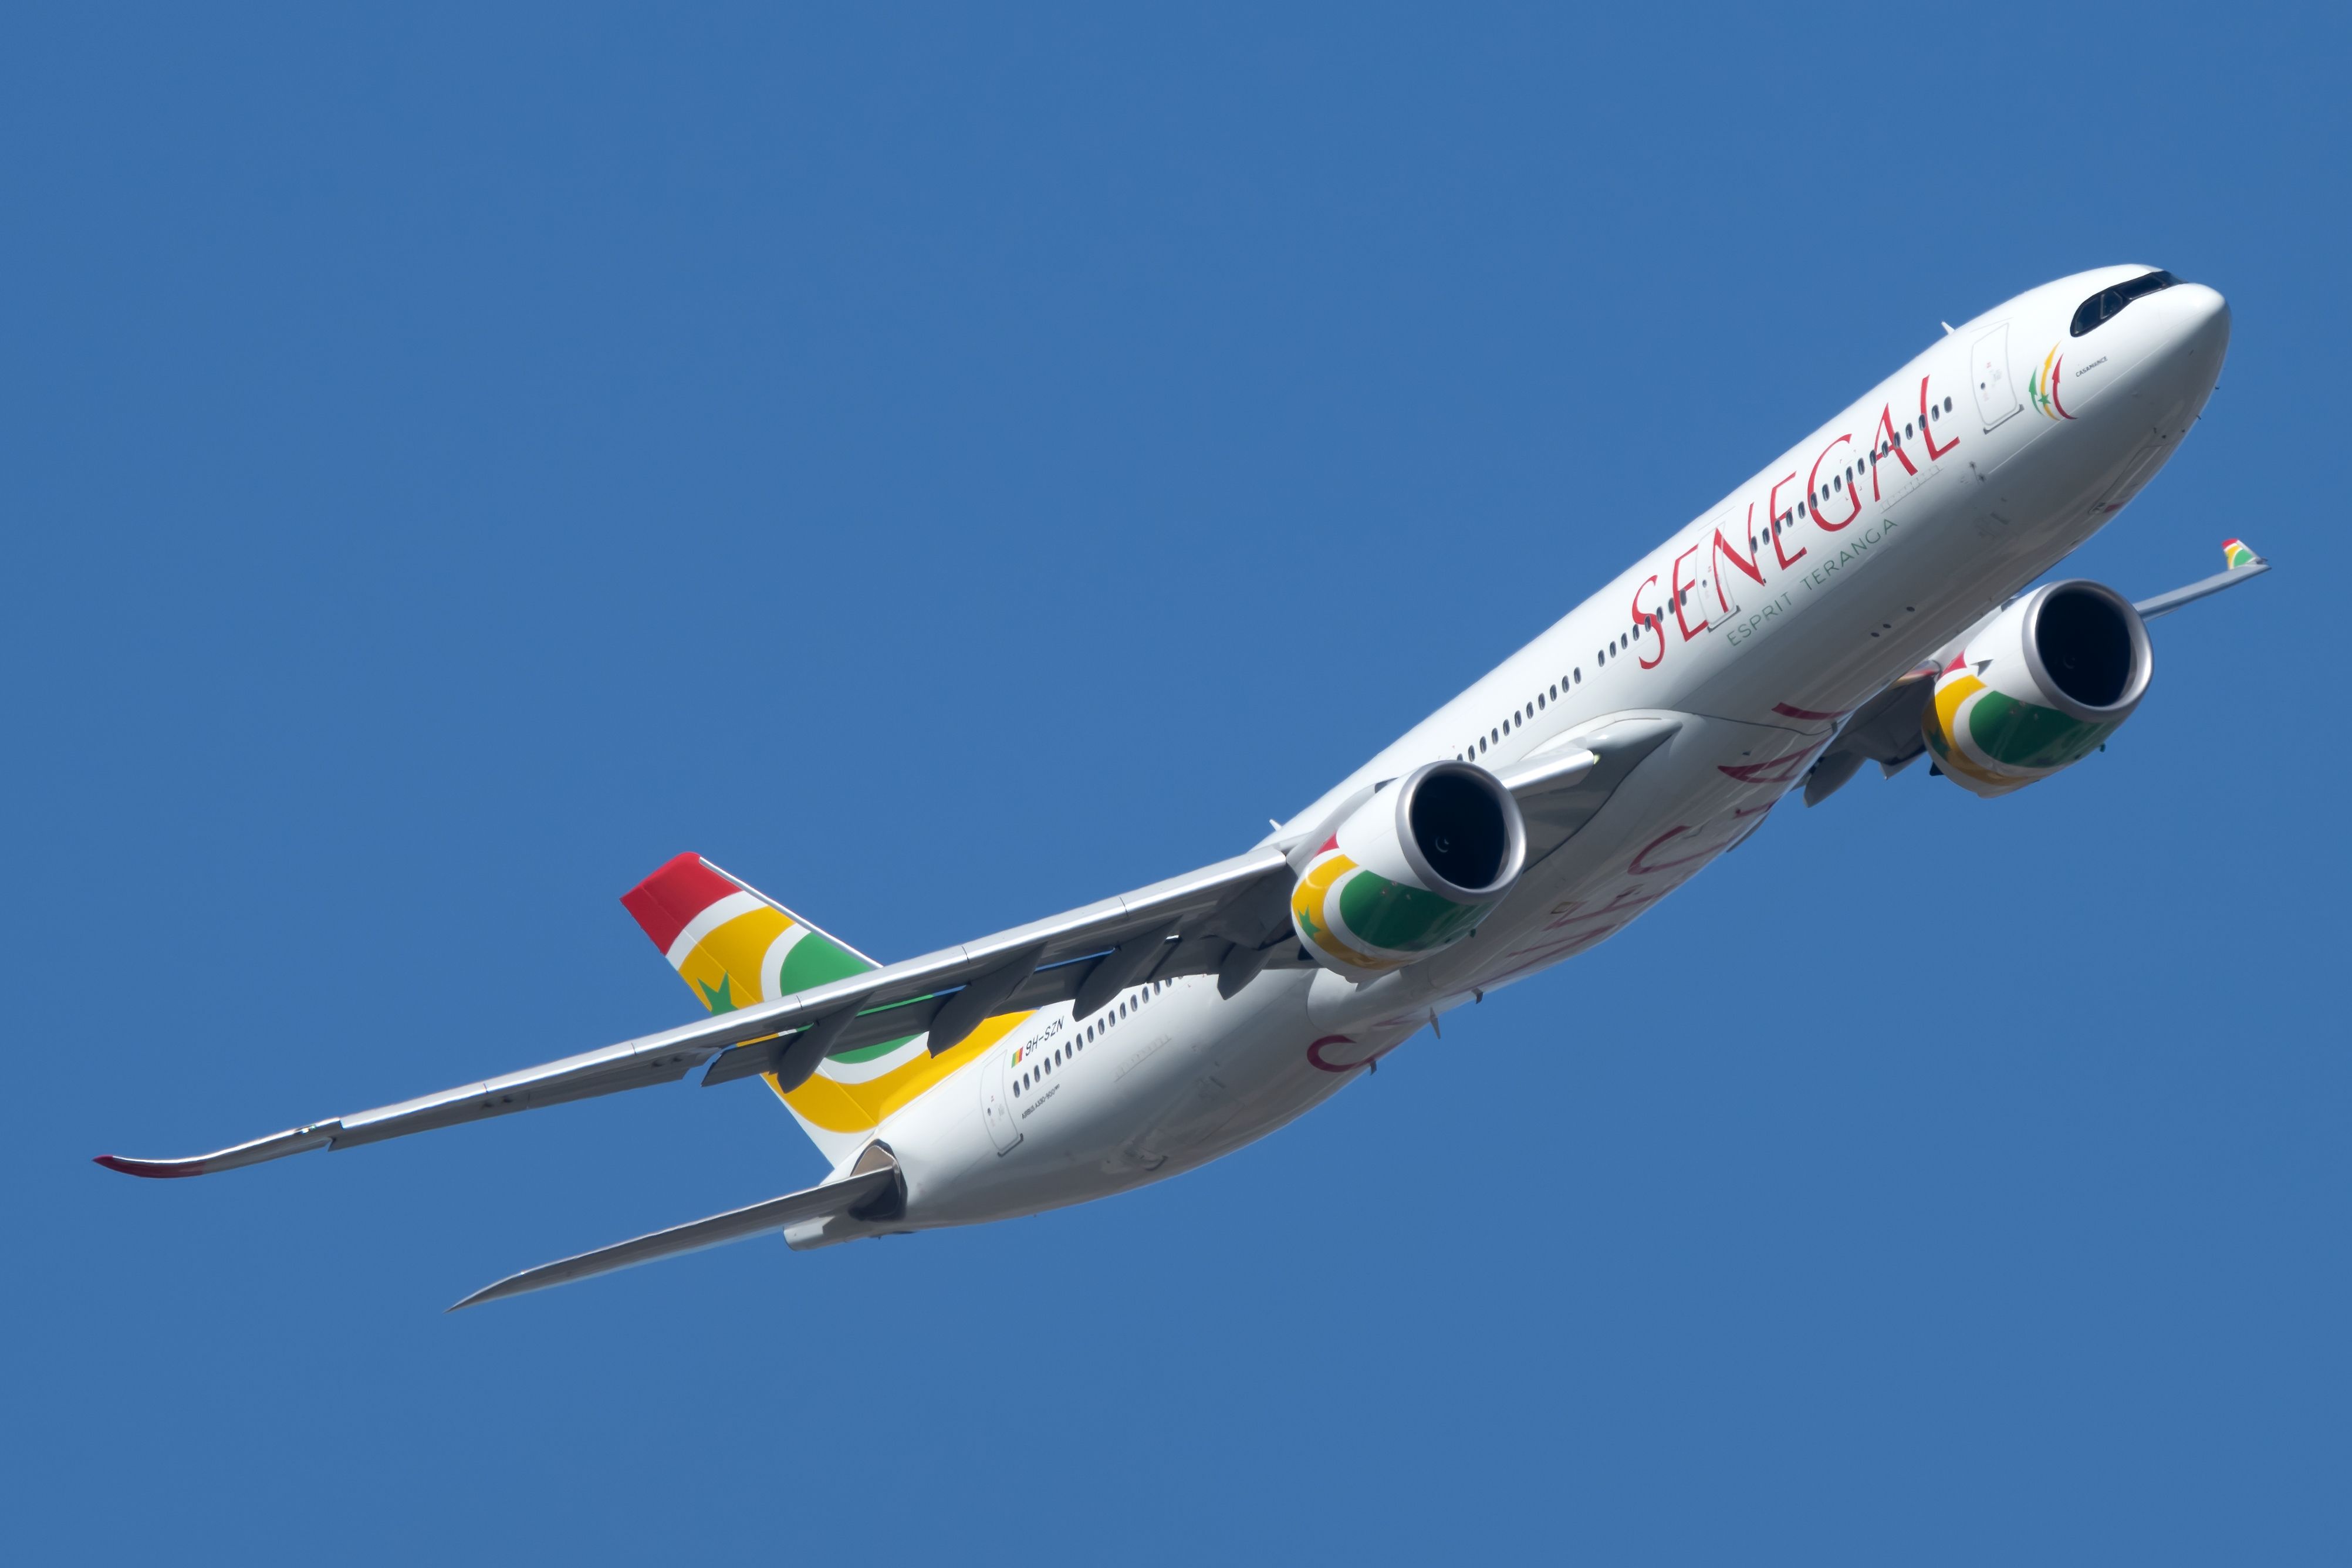 Air Senegal Airbus A330-900